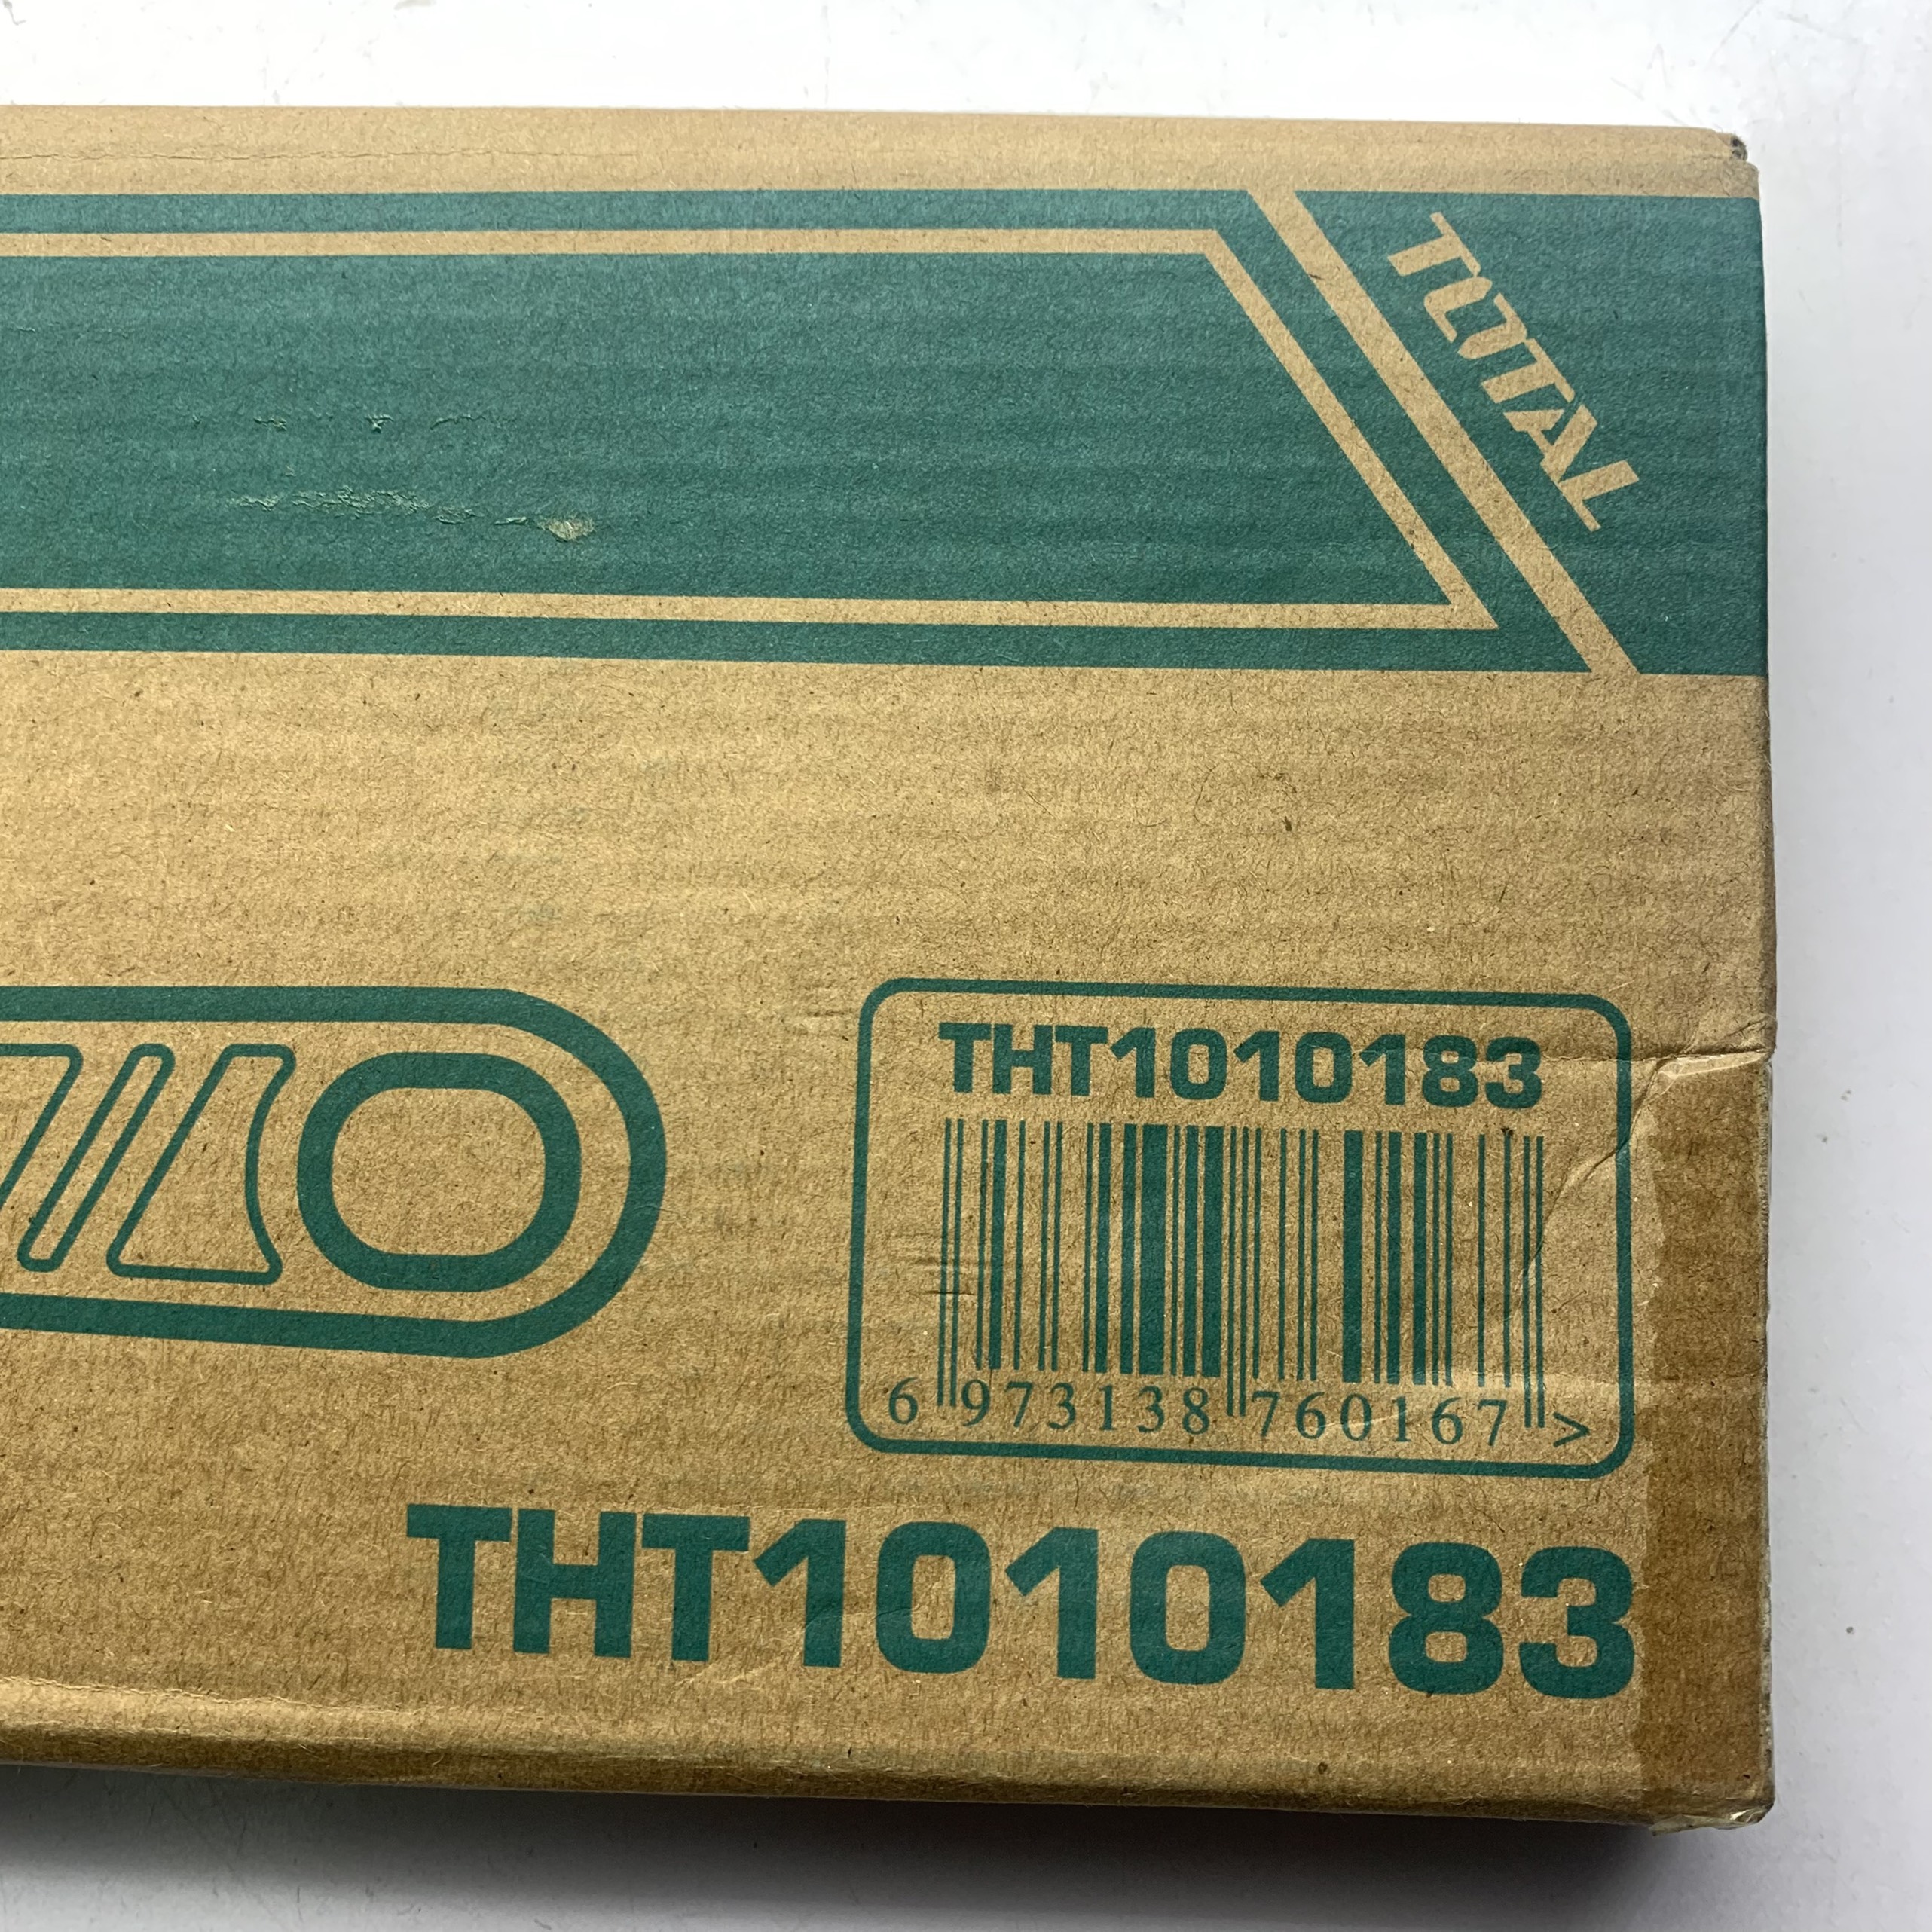 Trên hộp carton có in đầy đủ thông tin mã số sản xuất